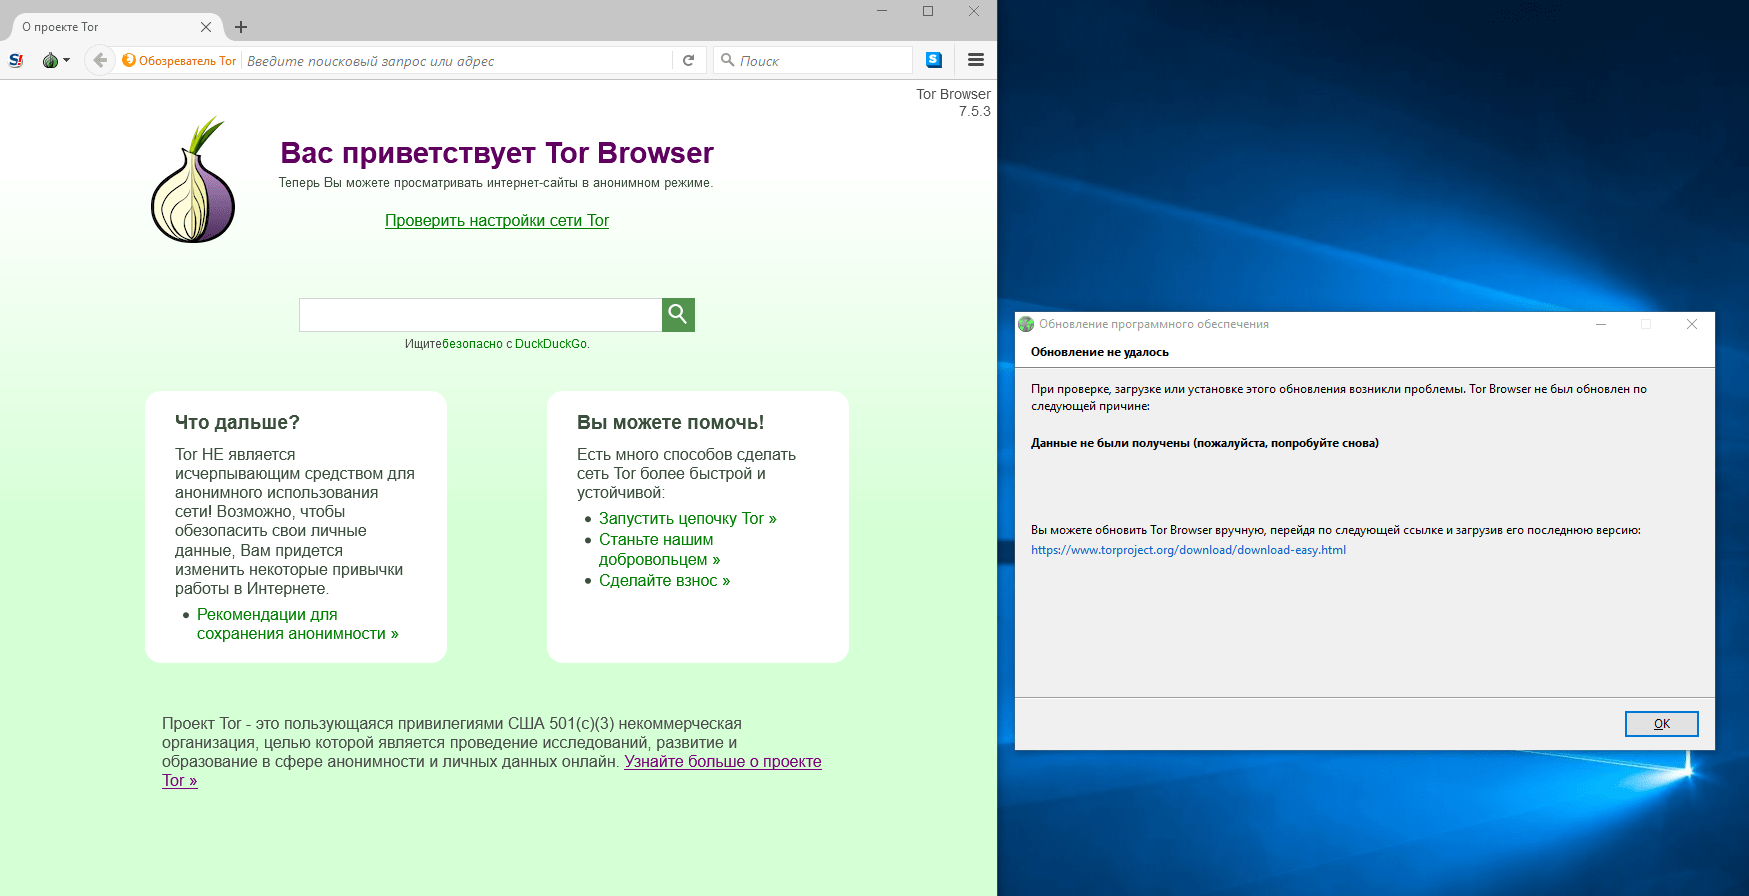 Как разрешить выход в интернет тор браузеру mega2web скачать tor browser на русском для linux mega вход